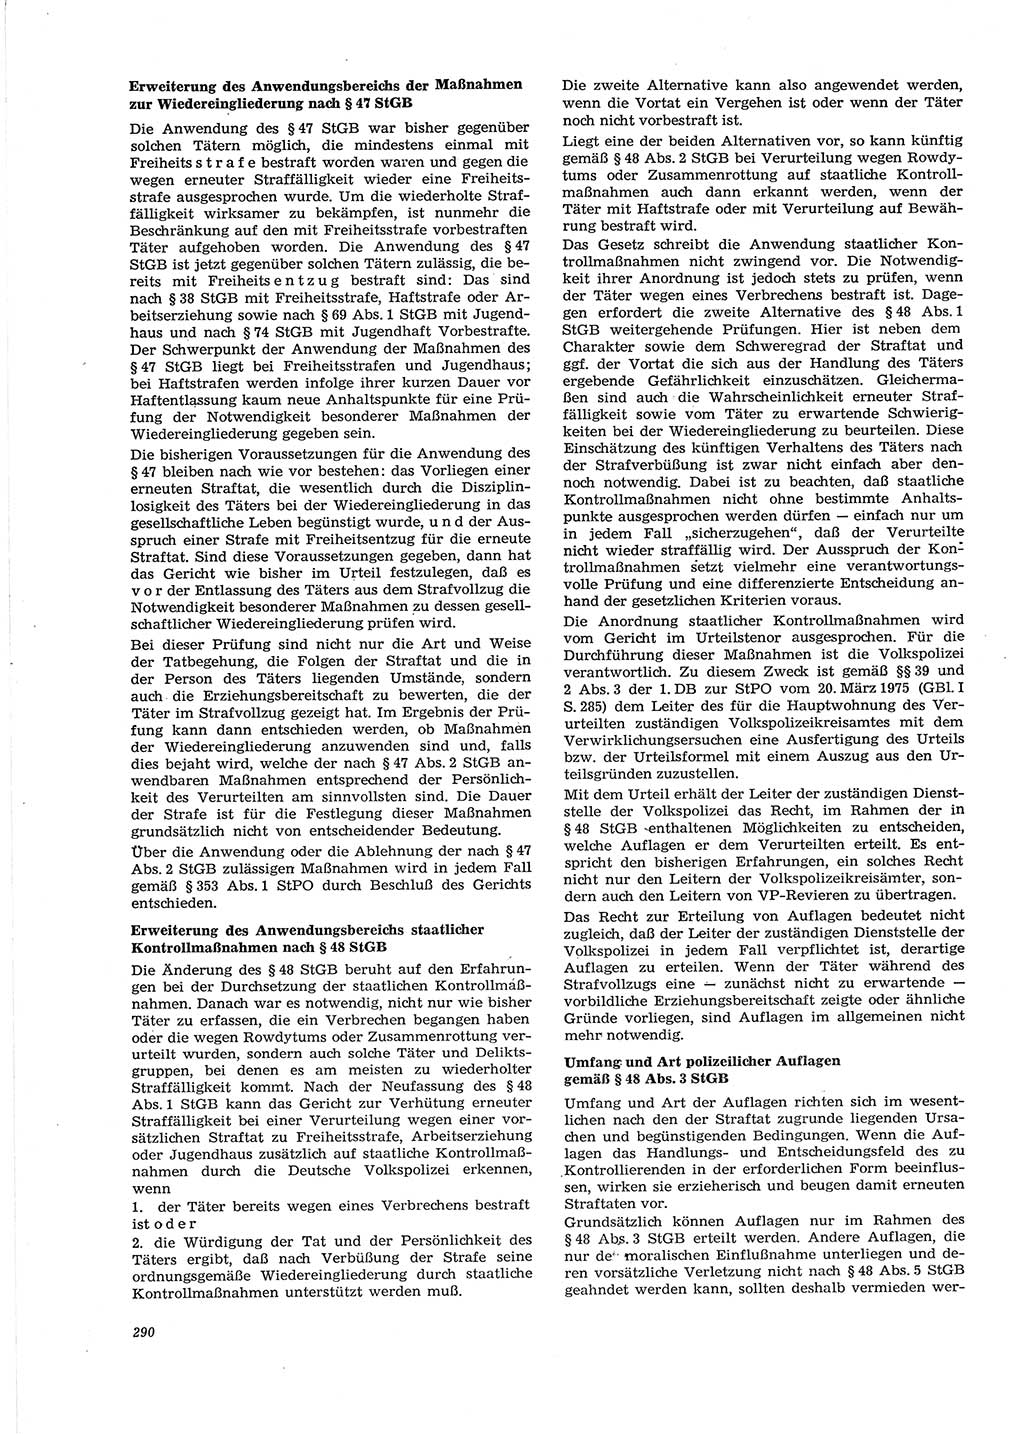 Neue Justiz (NJ), Zeitschrift für Recht und Rechtswissenschaft [Deutsche Demokratische Republik (DDR)], 29. Jahrgang 1975, Seite 290 (NJ DDR 1975, S. 290)